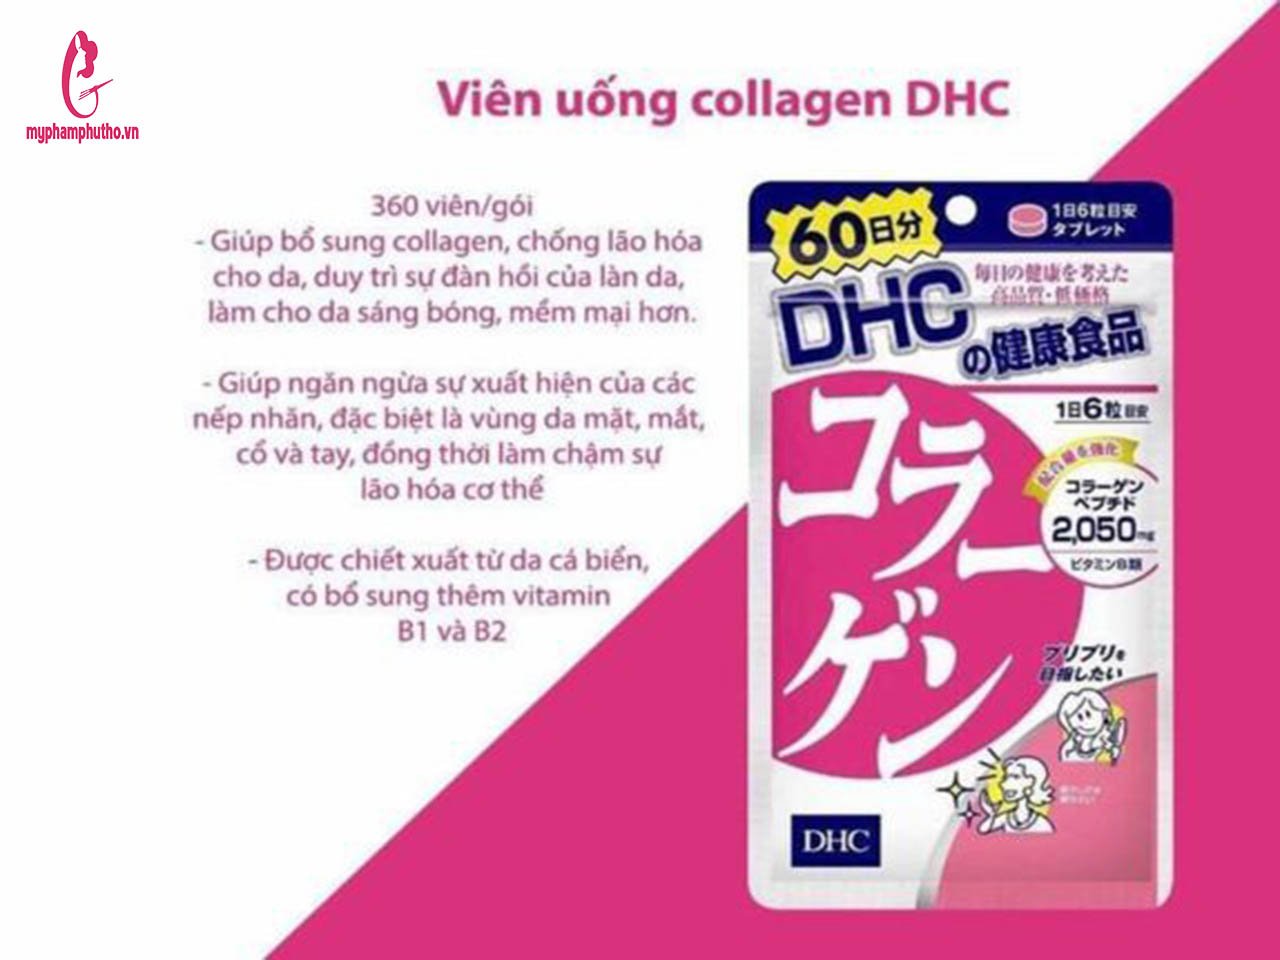 Viên Uống Collagen DHC 360 viên 60 ngày của Nhật – myphamphutho.vn